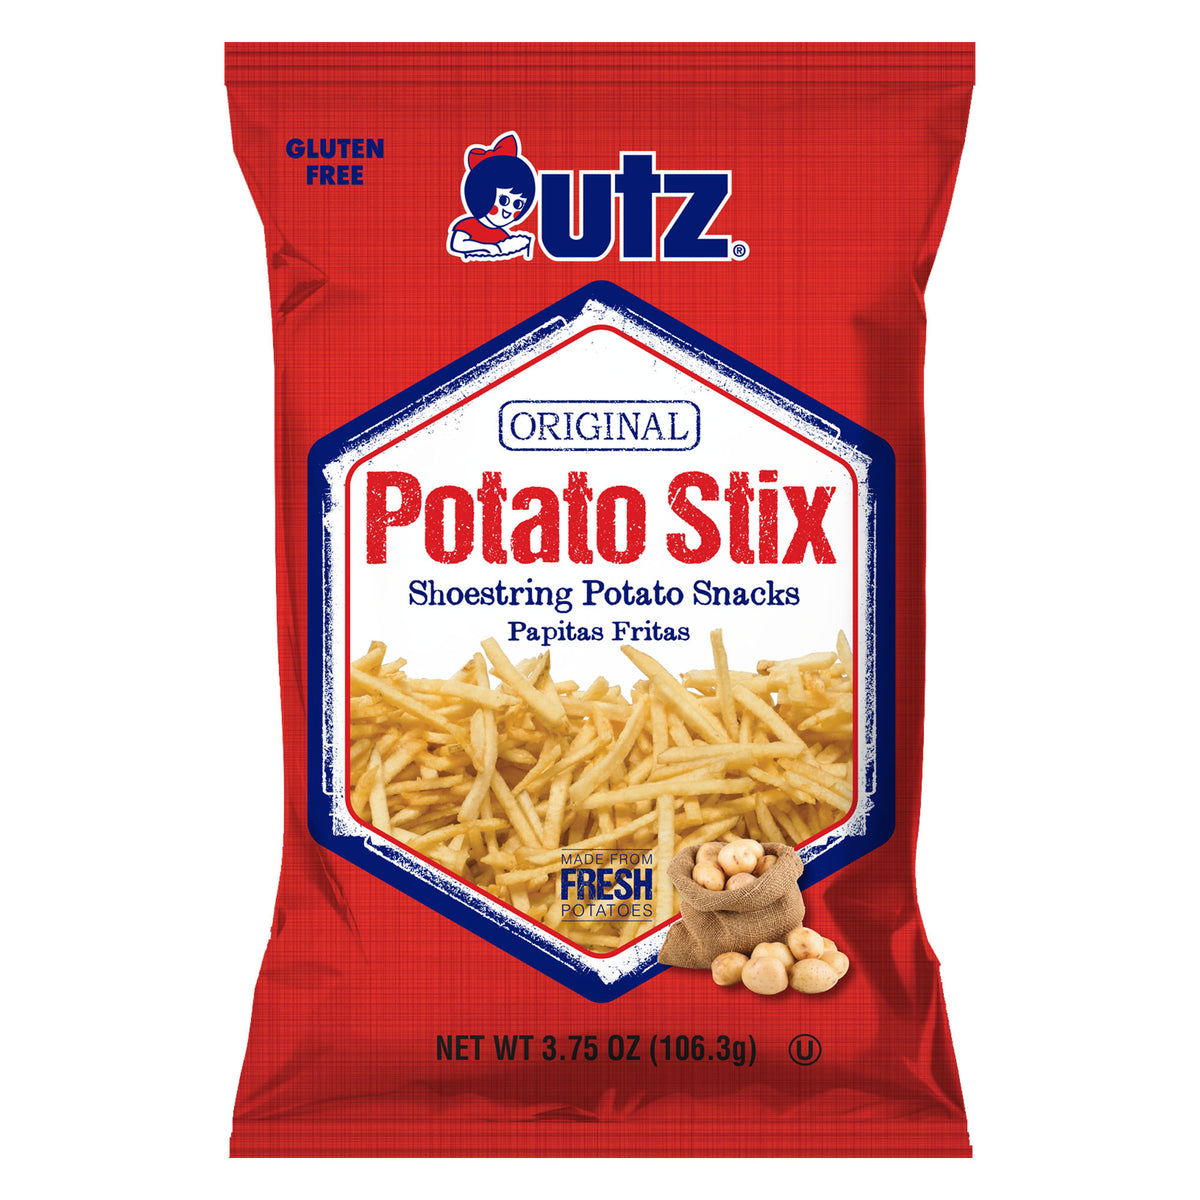 Utz Original Potato Stix, 15 oz